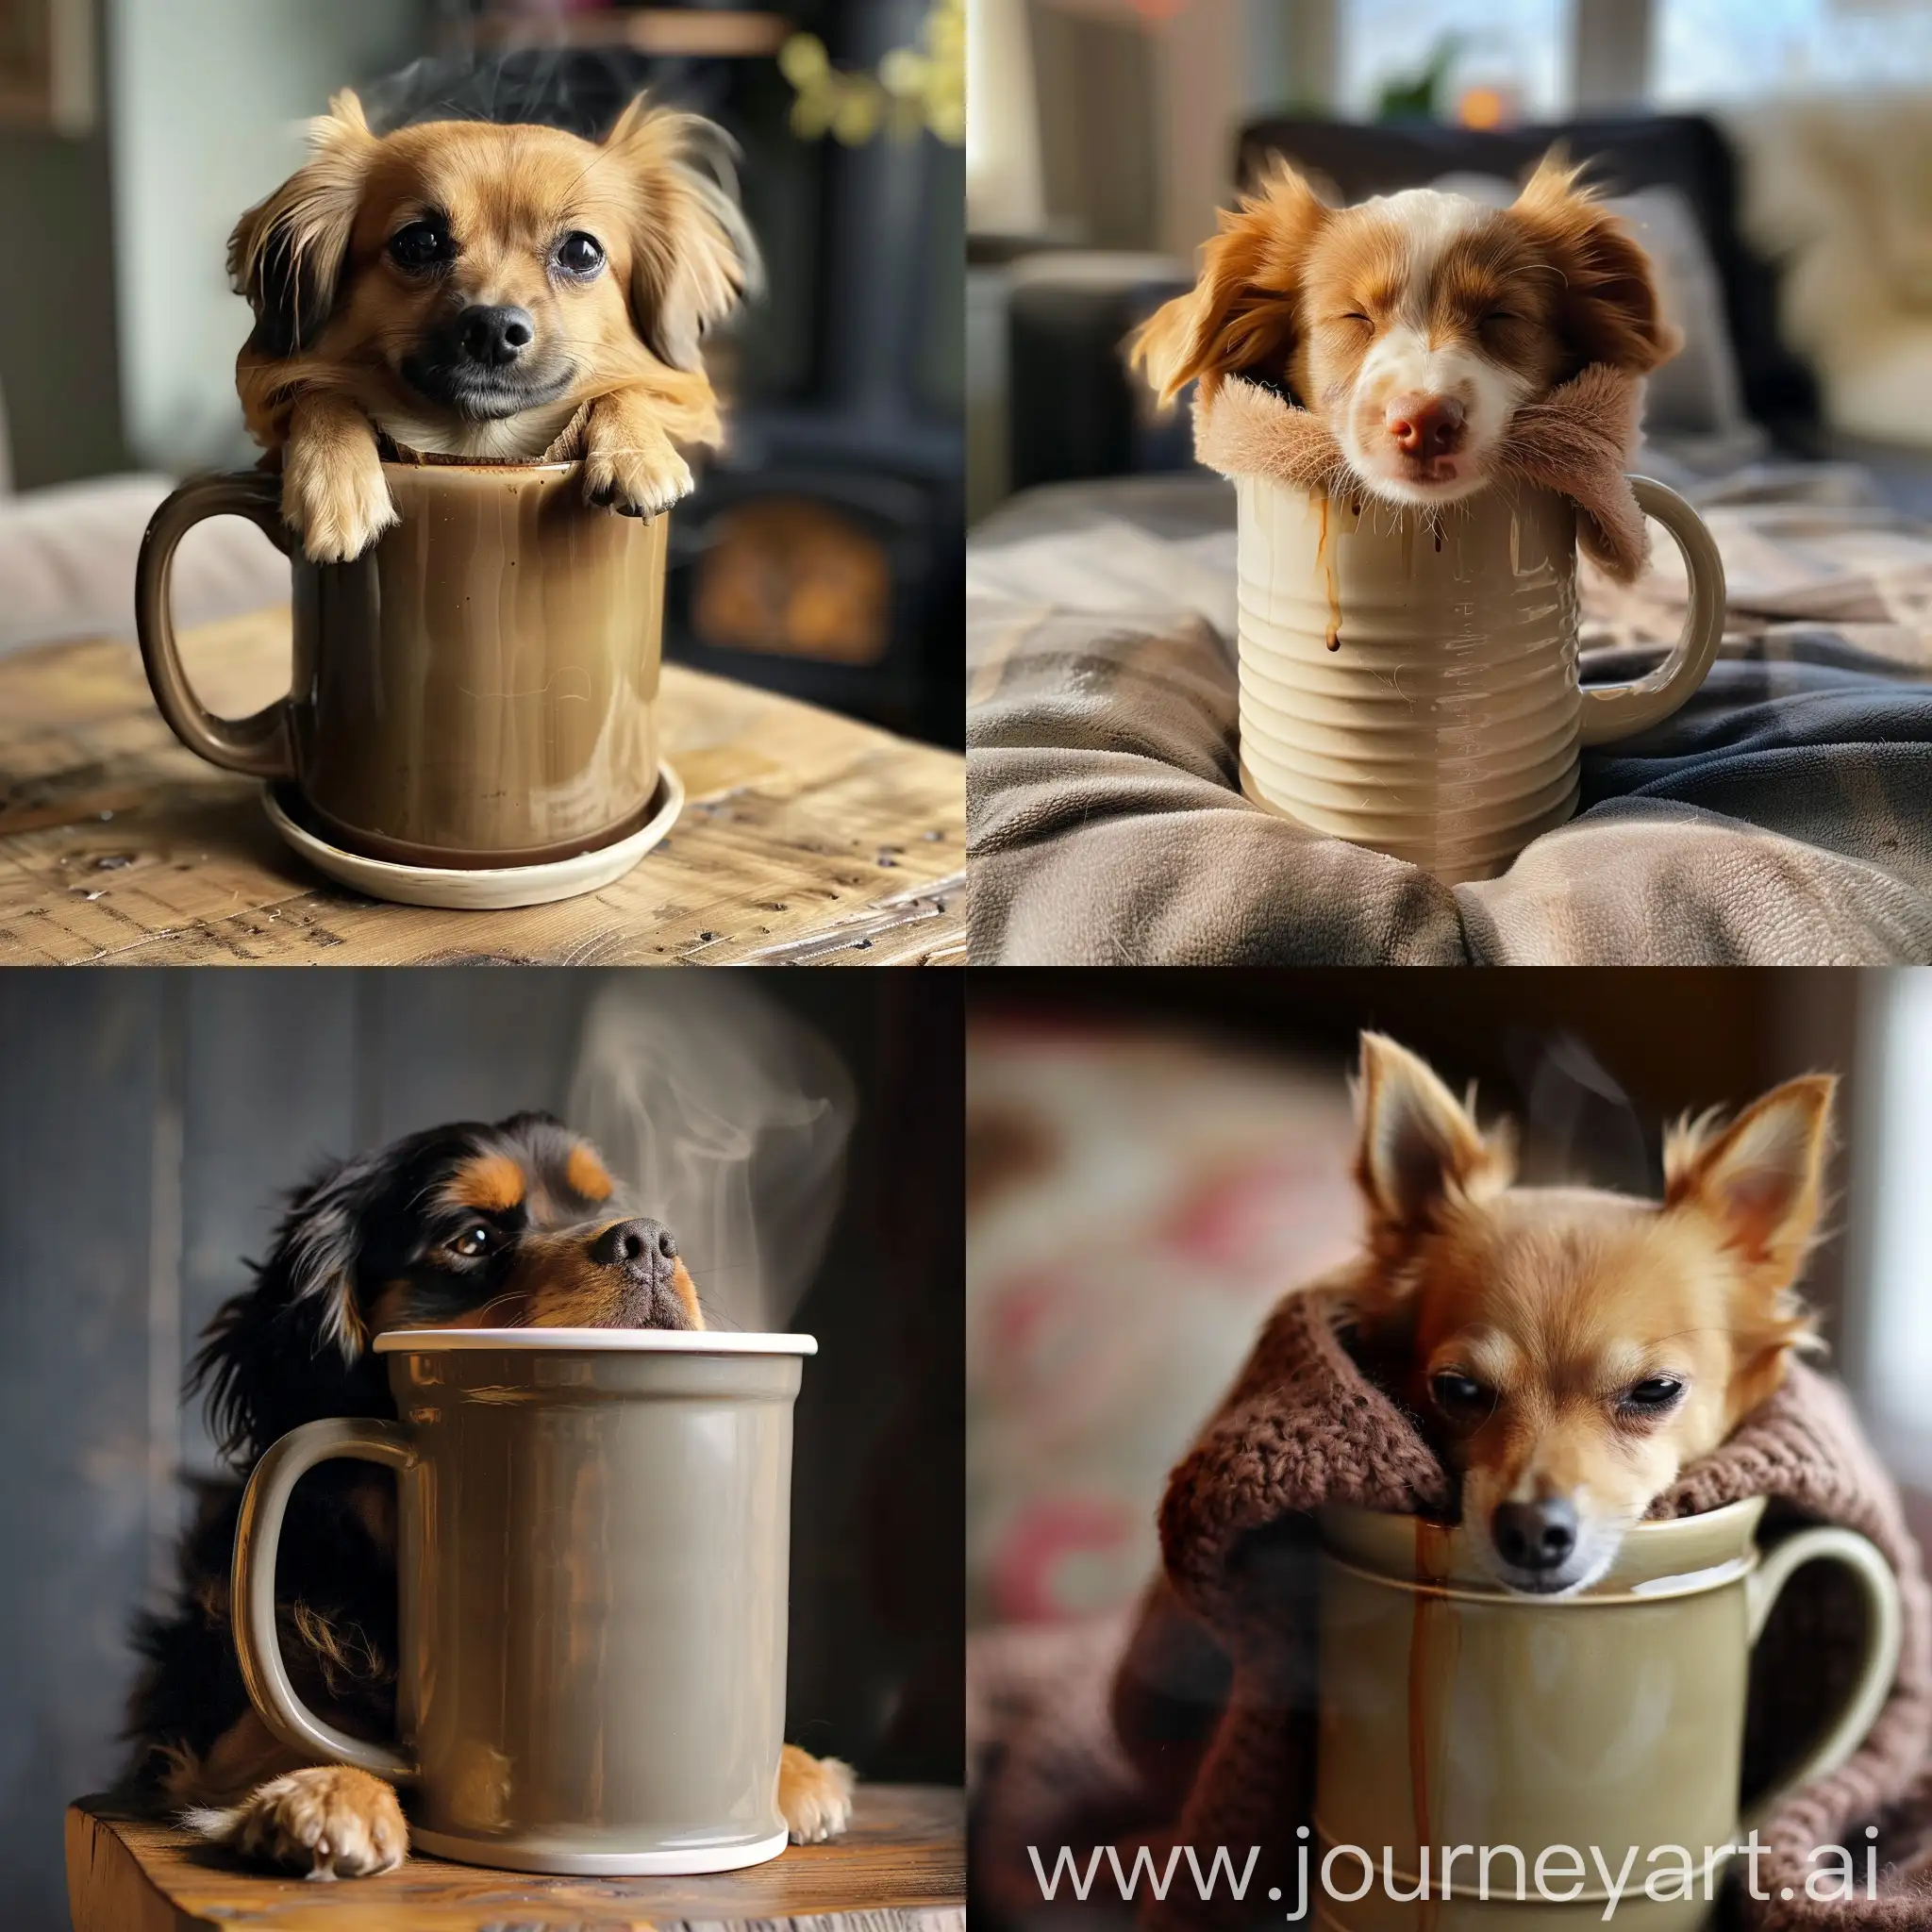 Adorable-Dog-Enjoying-a-Cozy-Coffee-Mug-Moment